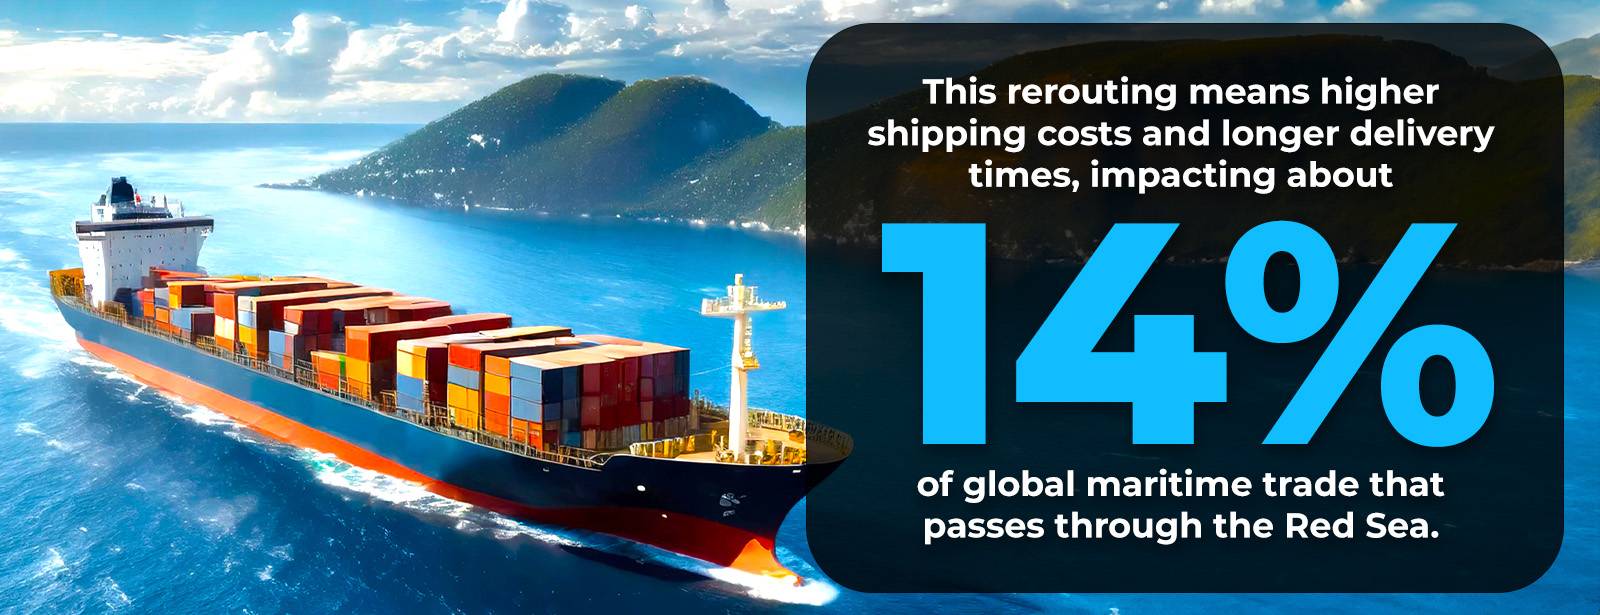 14% 的全球贸易因红海袭击而受到更长航线的影响